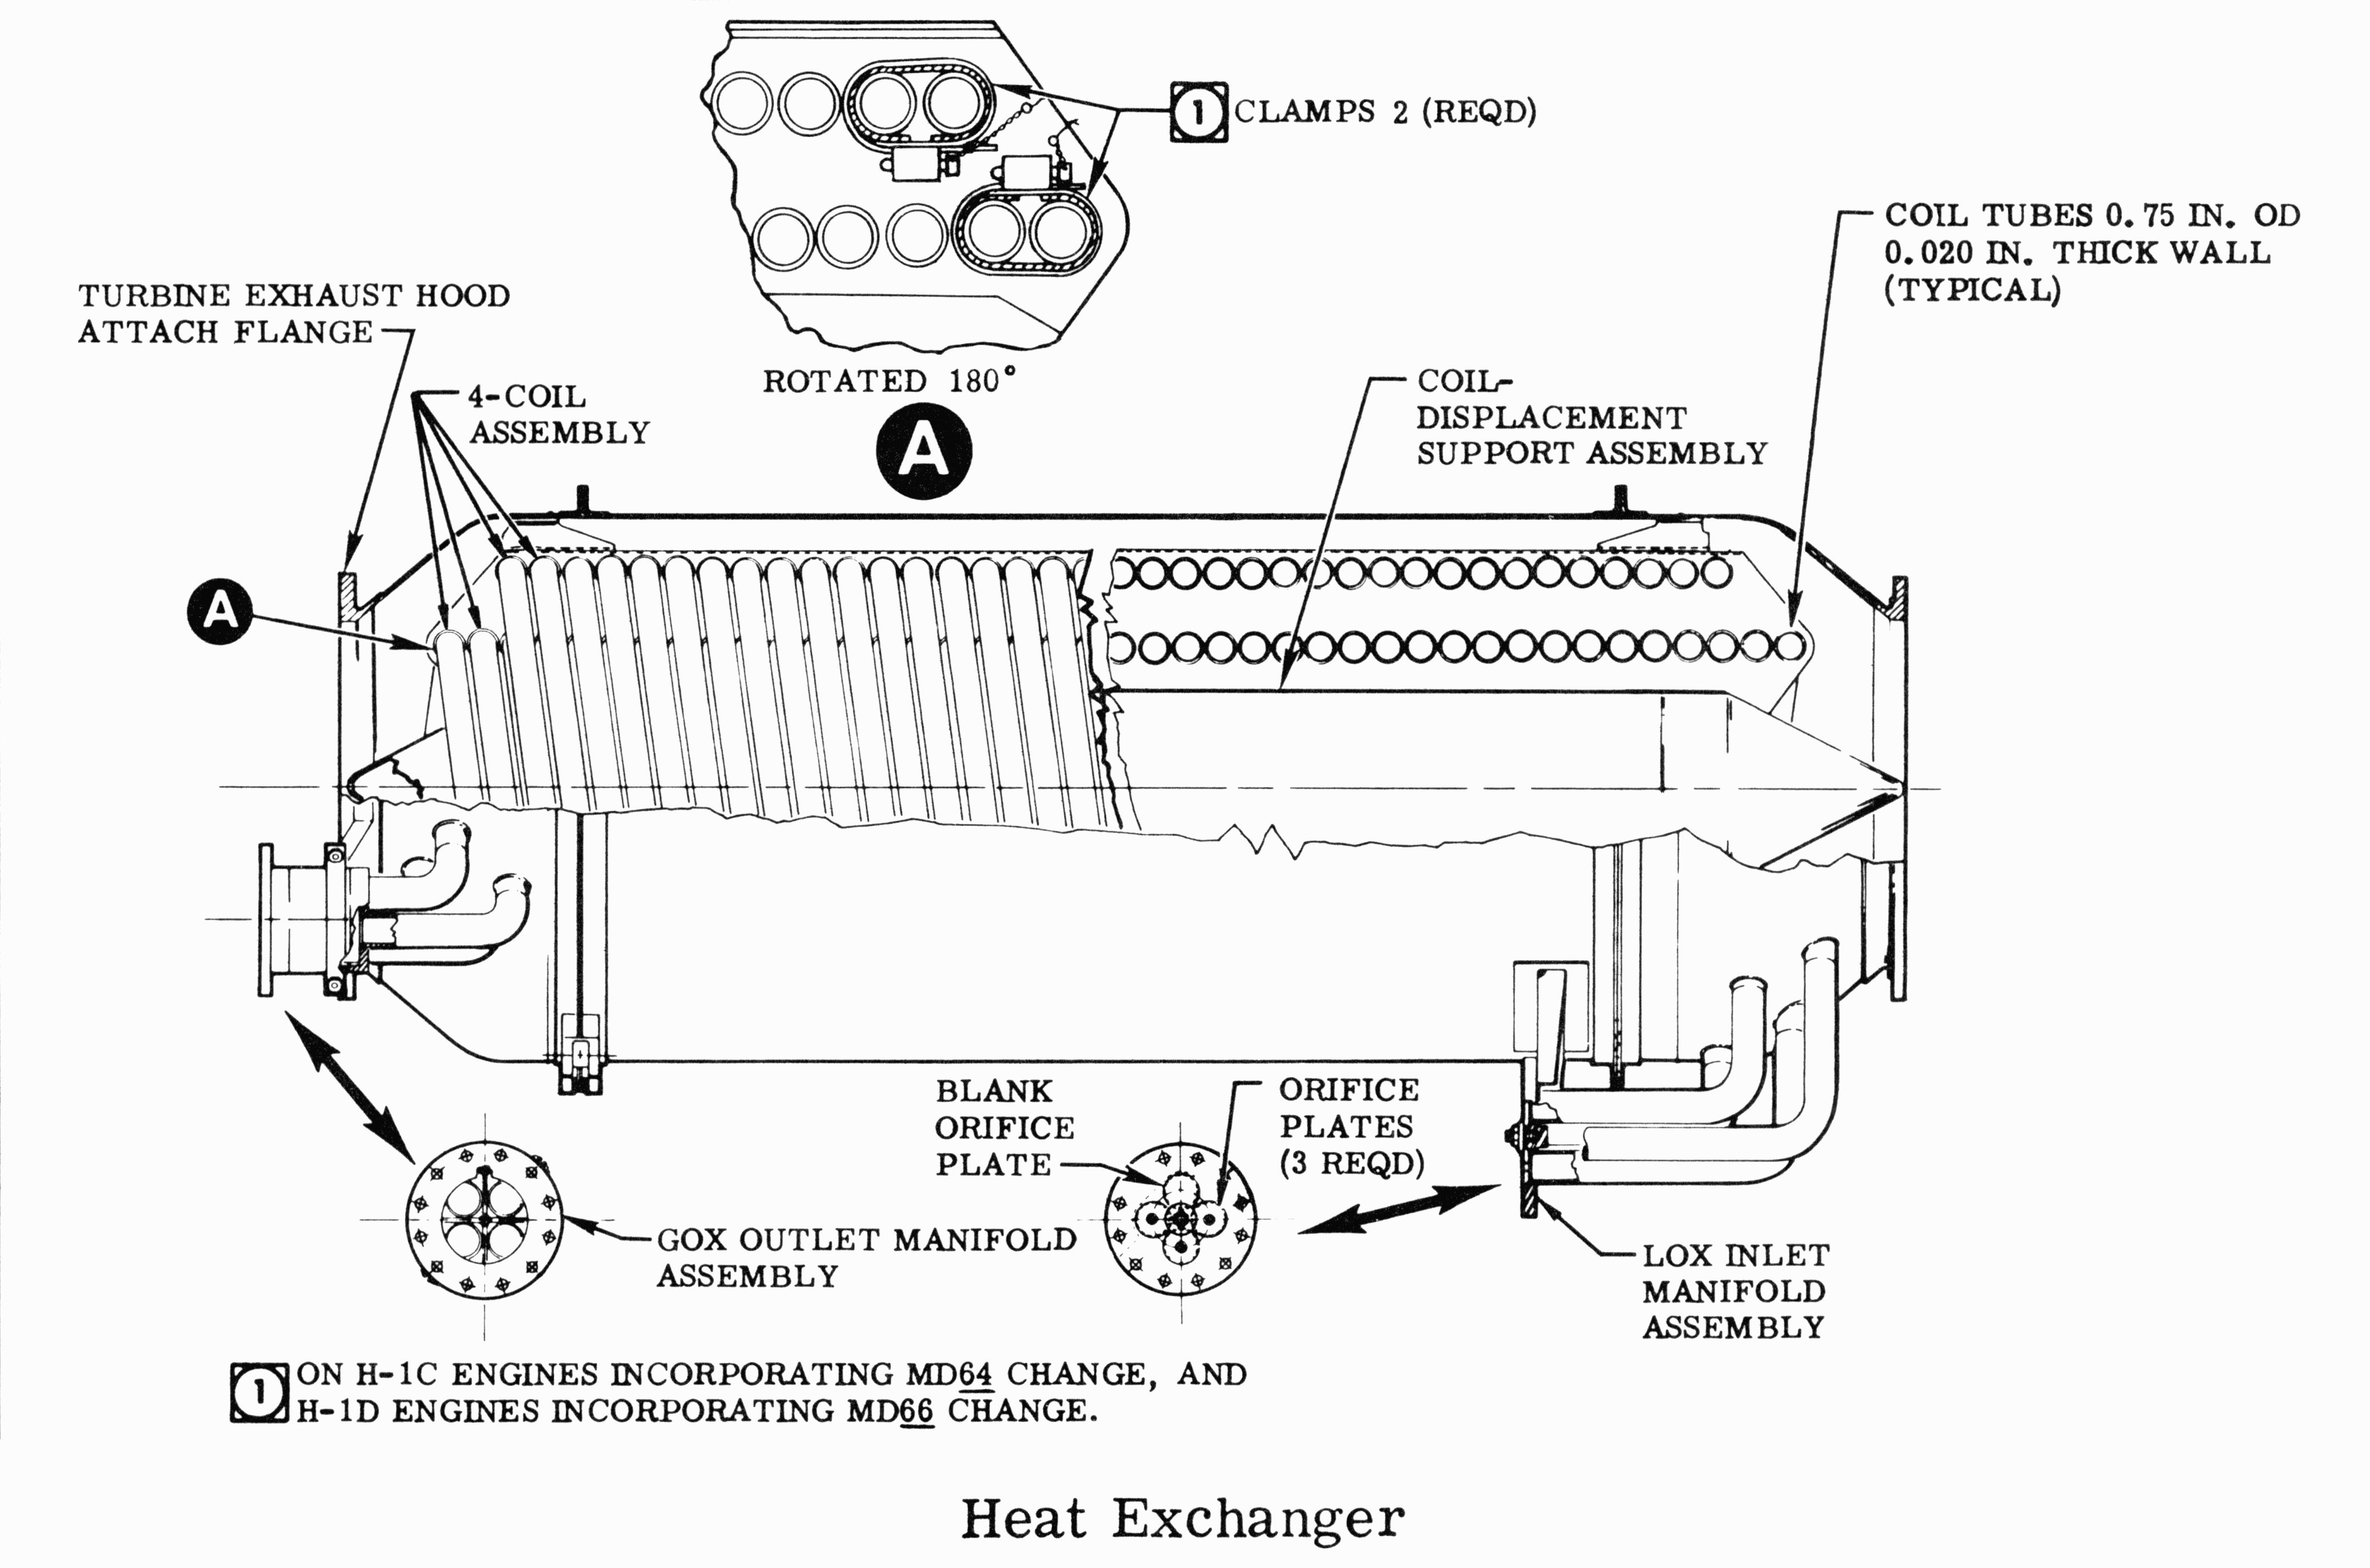 2004 Chevy Trailblazer Engine Diagram Def0944 2004 Saturn Ion Drl Wiring Diagram Of 2004 Chevy Trailblazer Engine Diagram